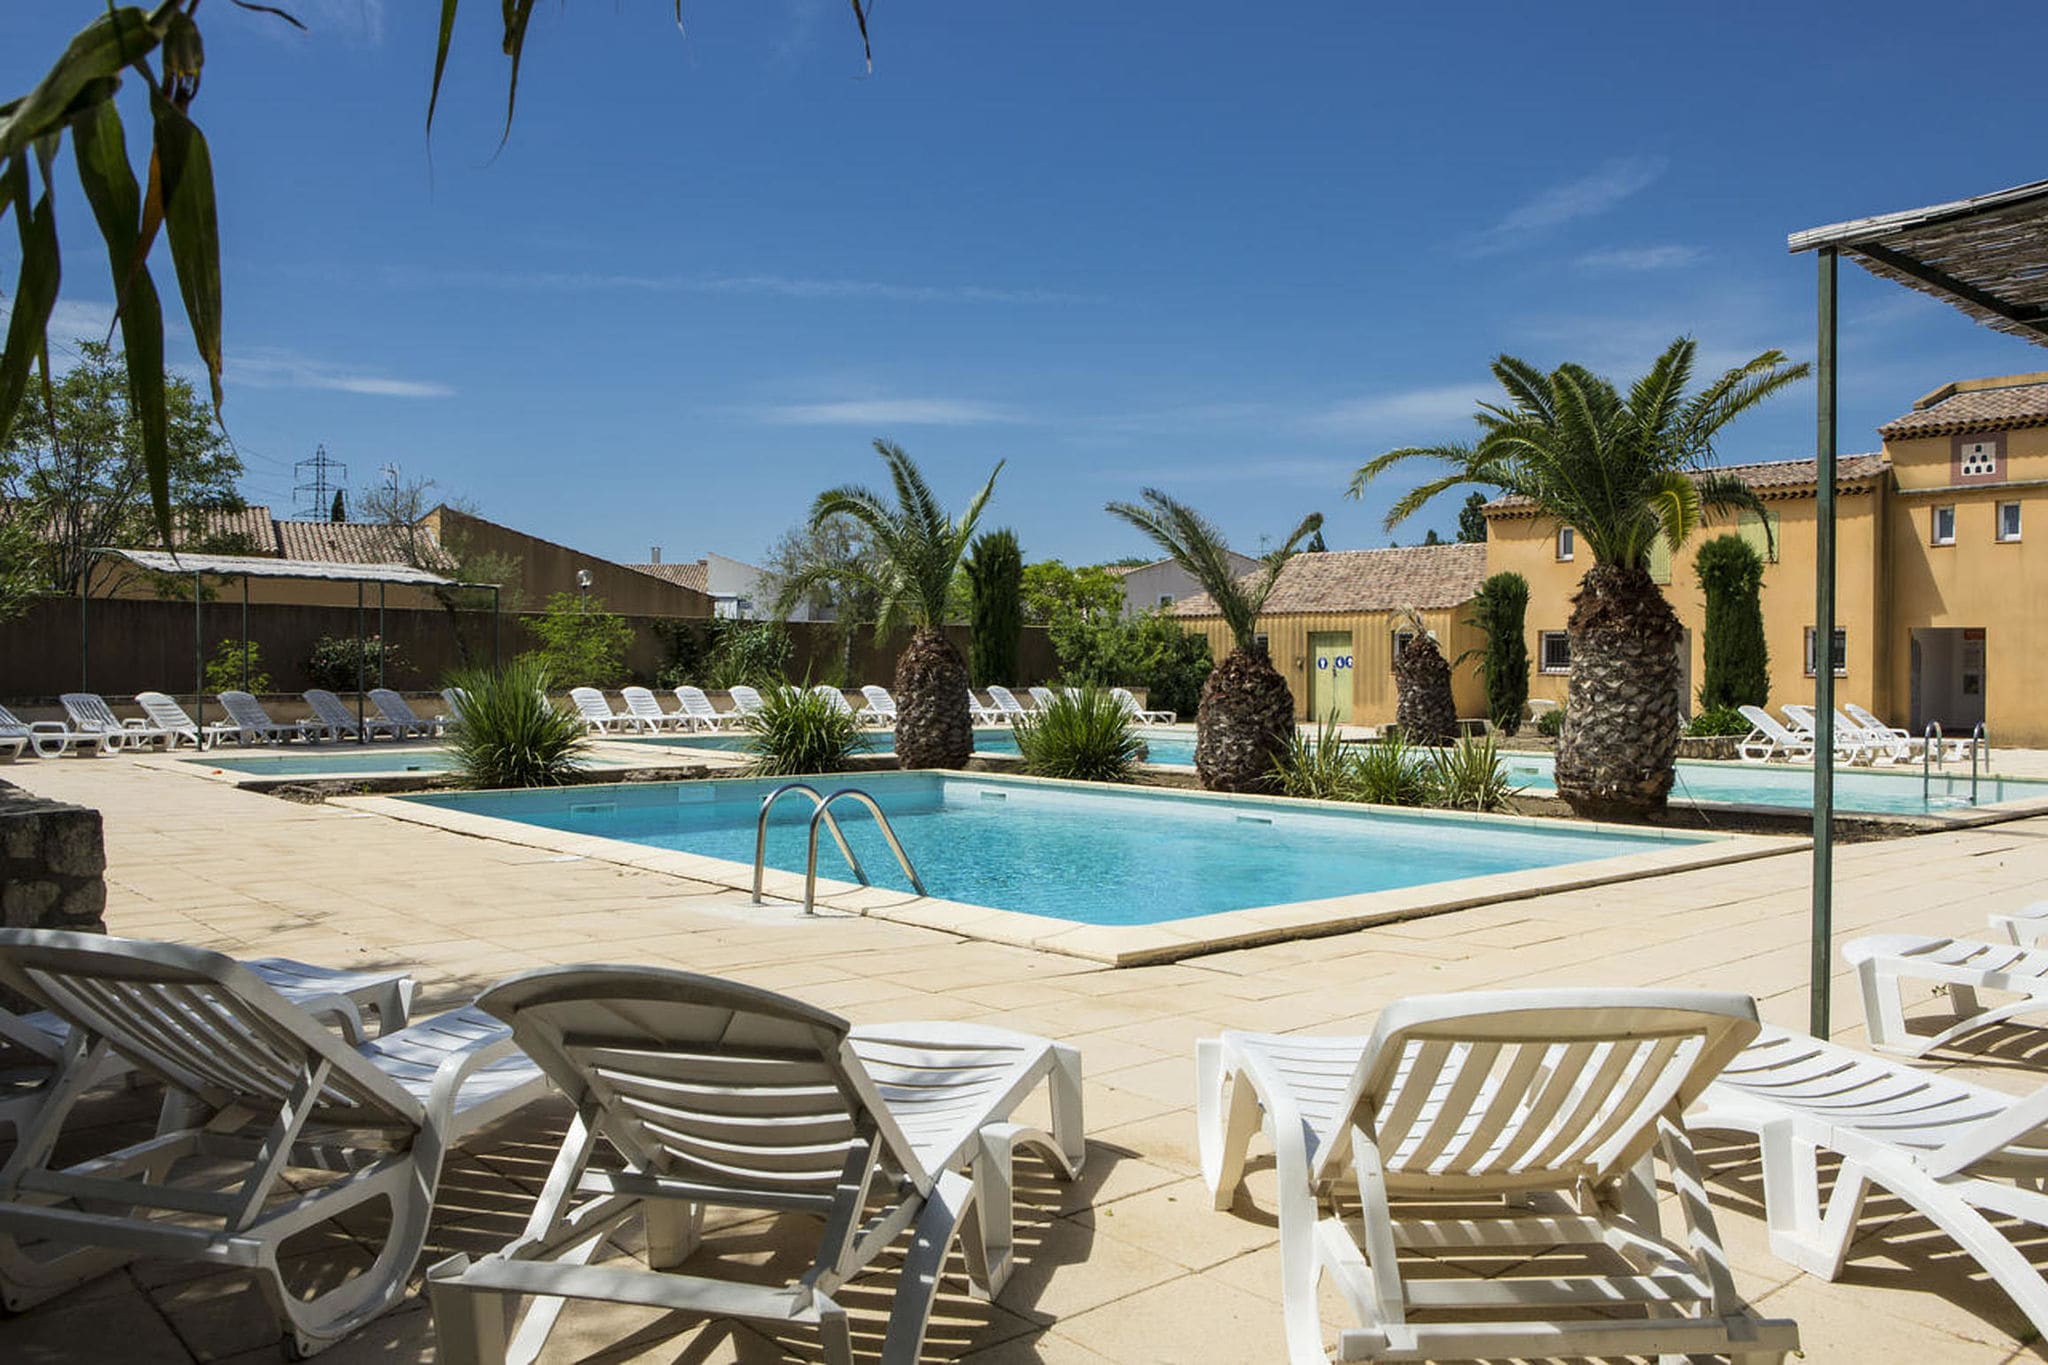 Maison de vacances cosy avec piscine à Arles